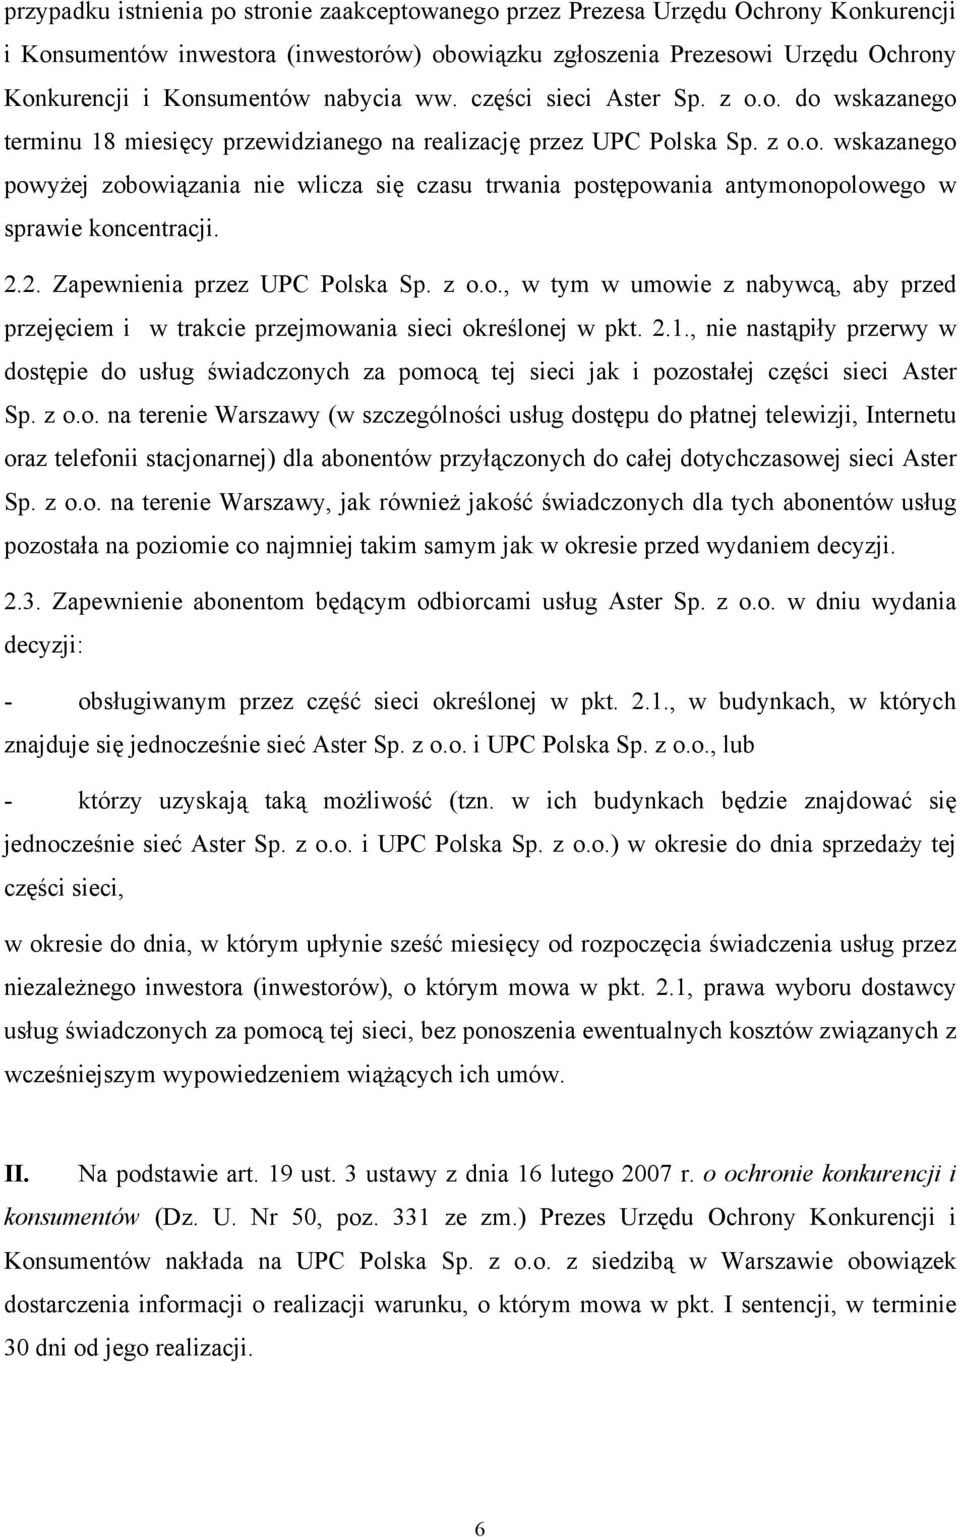 2.2. Zapewnienia przez UPC Polska Sp. z o.o., w tym w umowie z nabywcą, aby przed przejęciem i w trakcie przejmowania sieci określonej w pkt. 2.1.